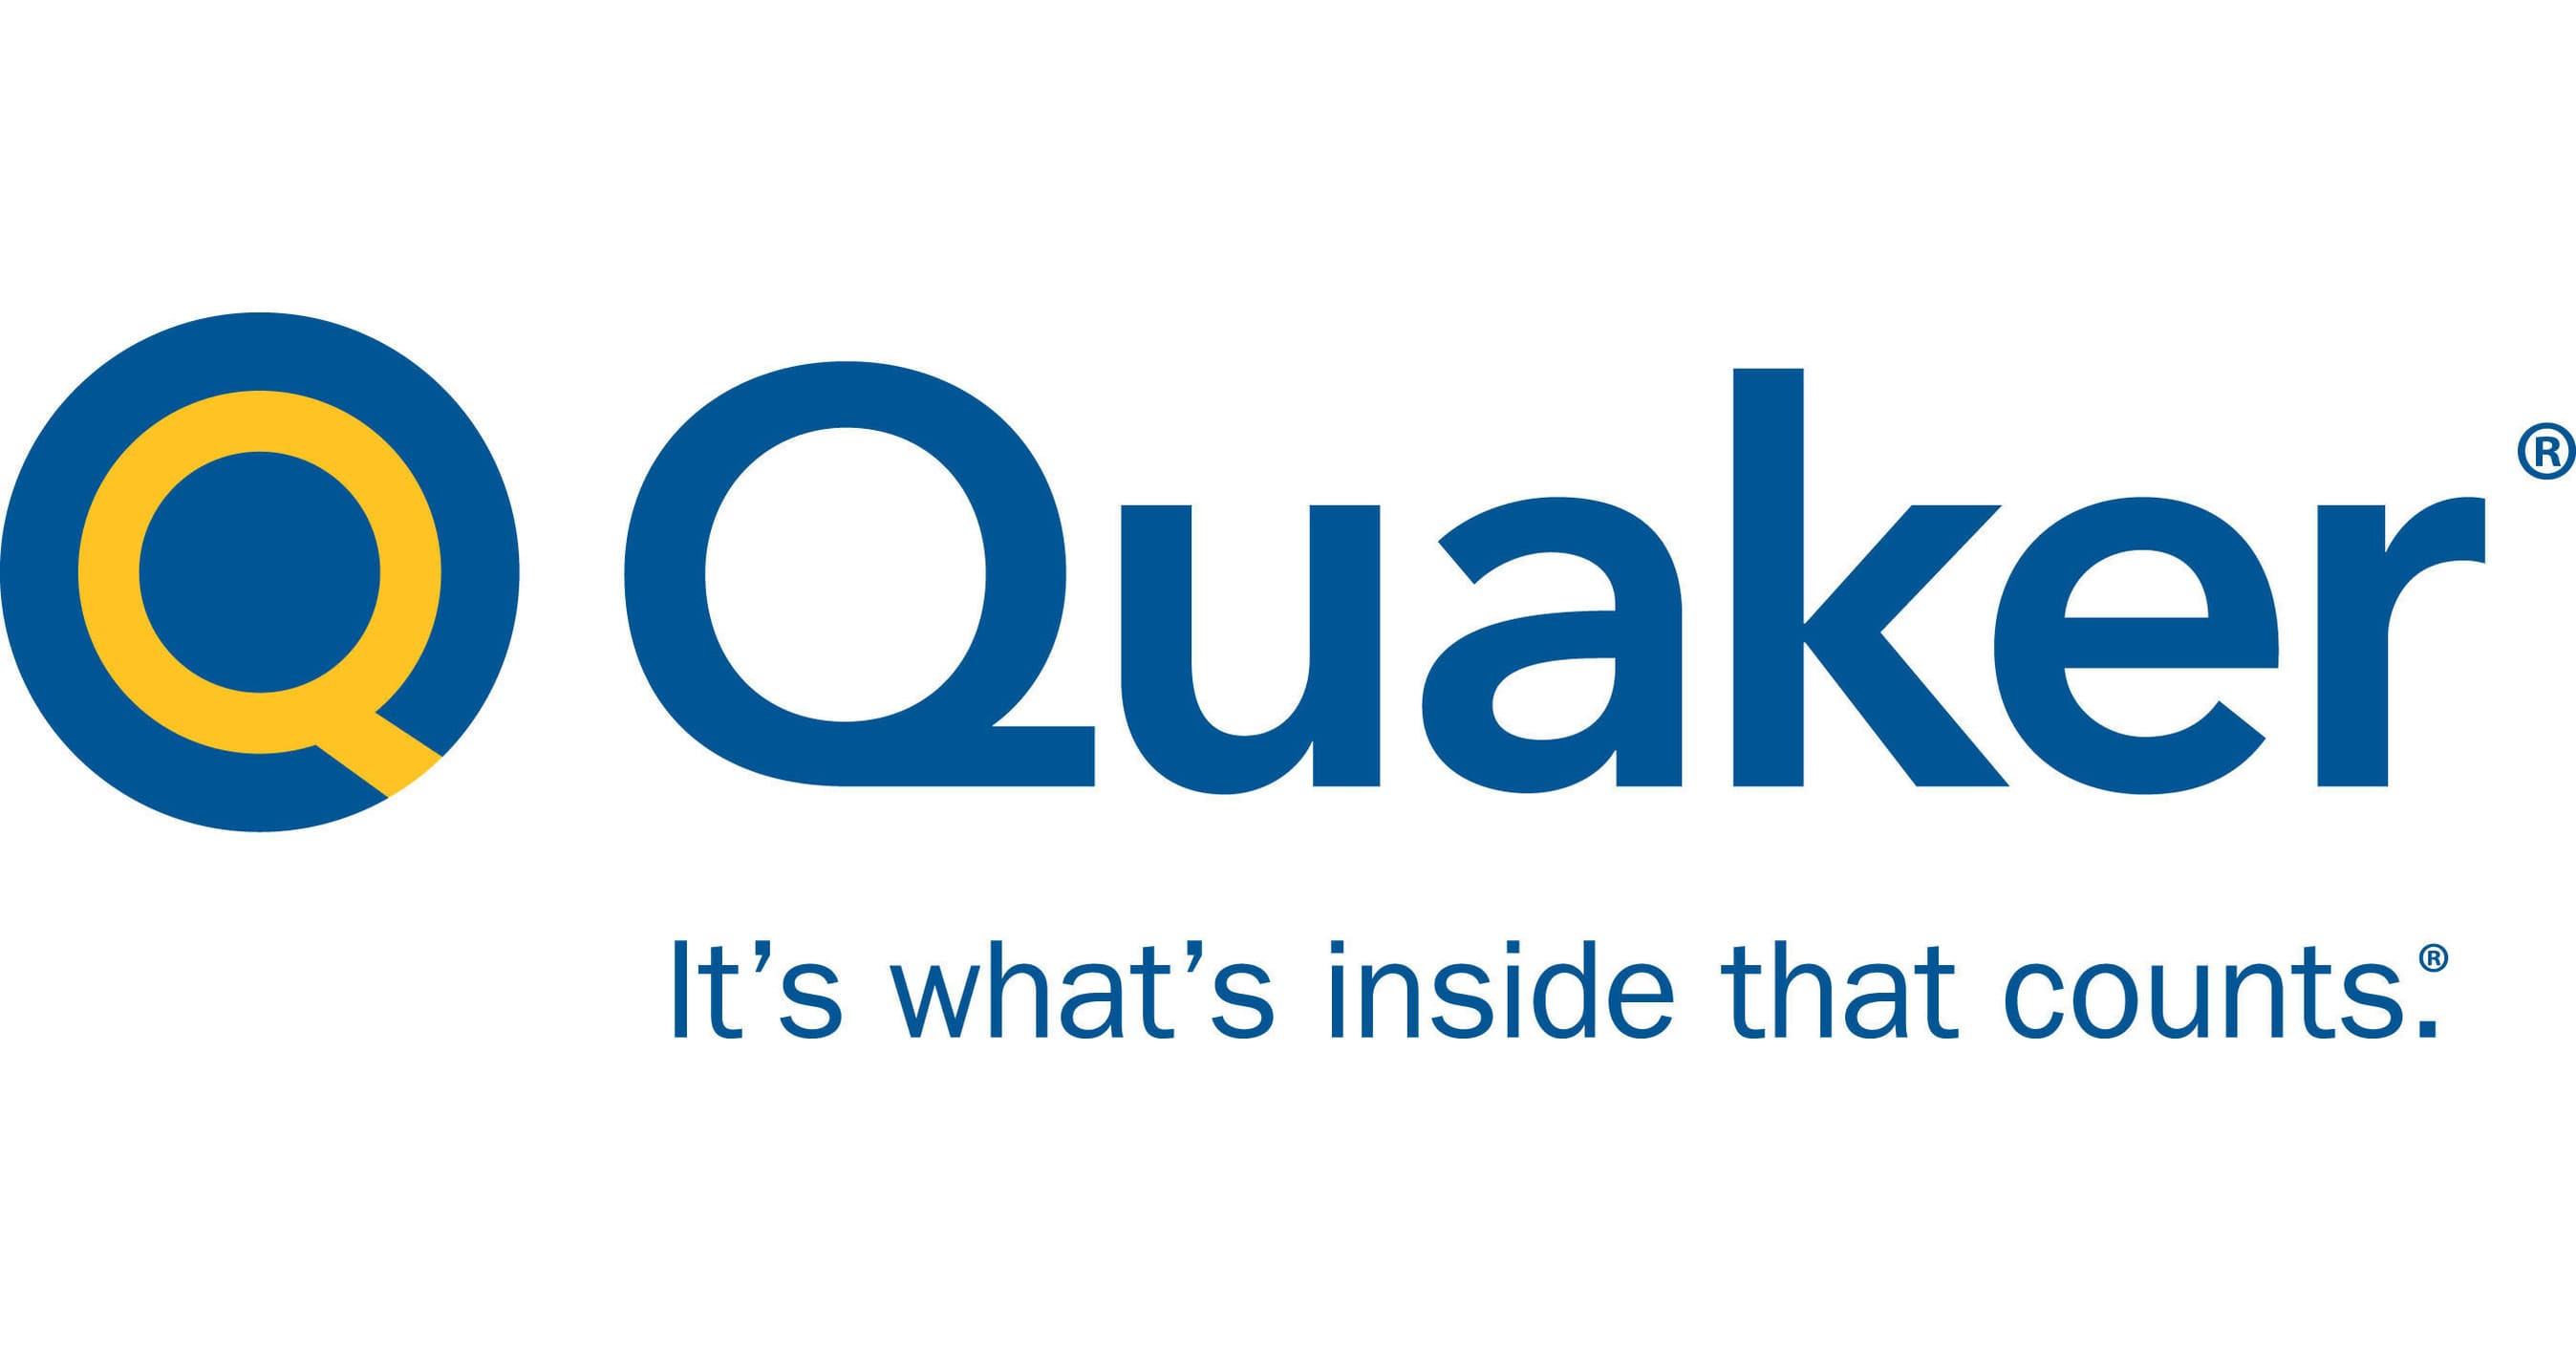 Logo Quaker Chemical Corporation